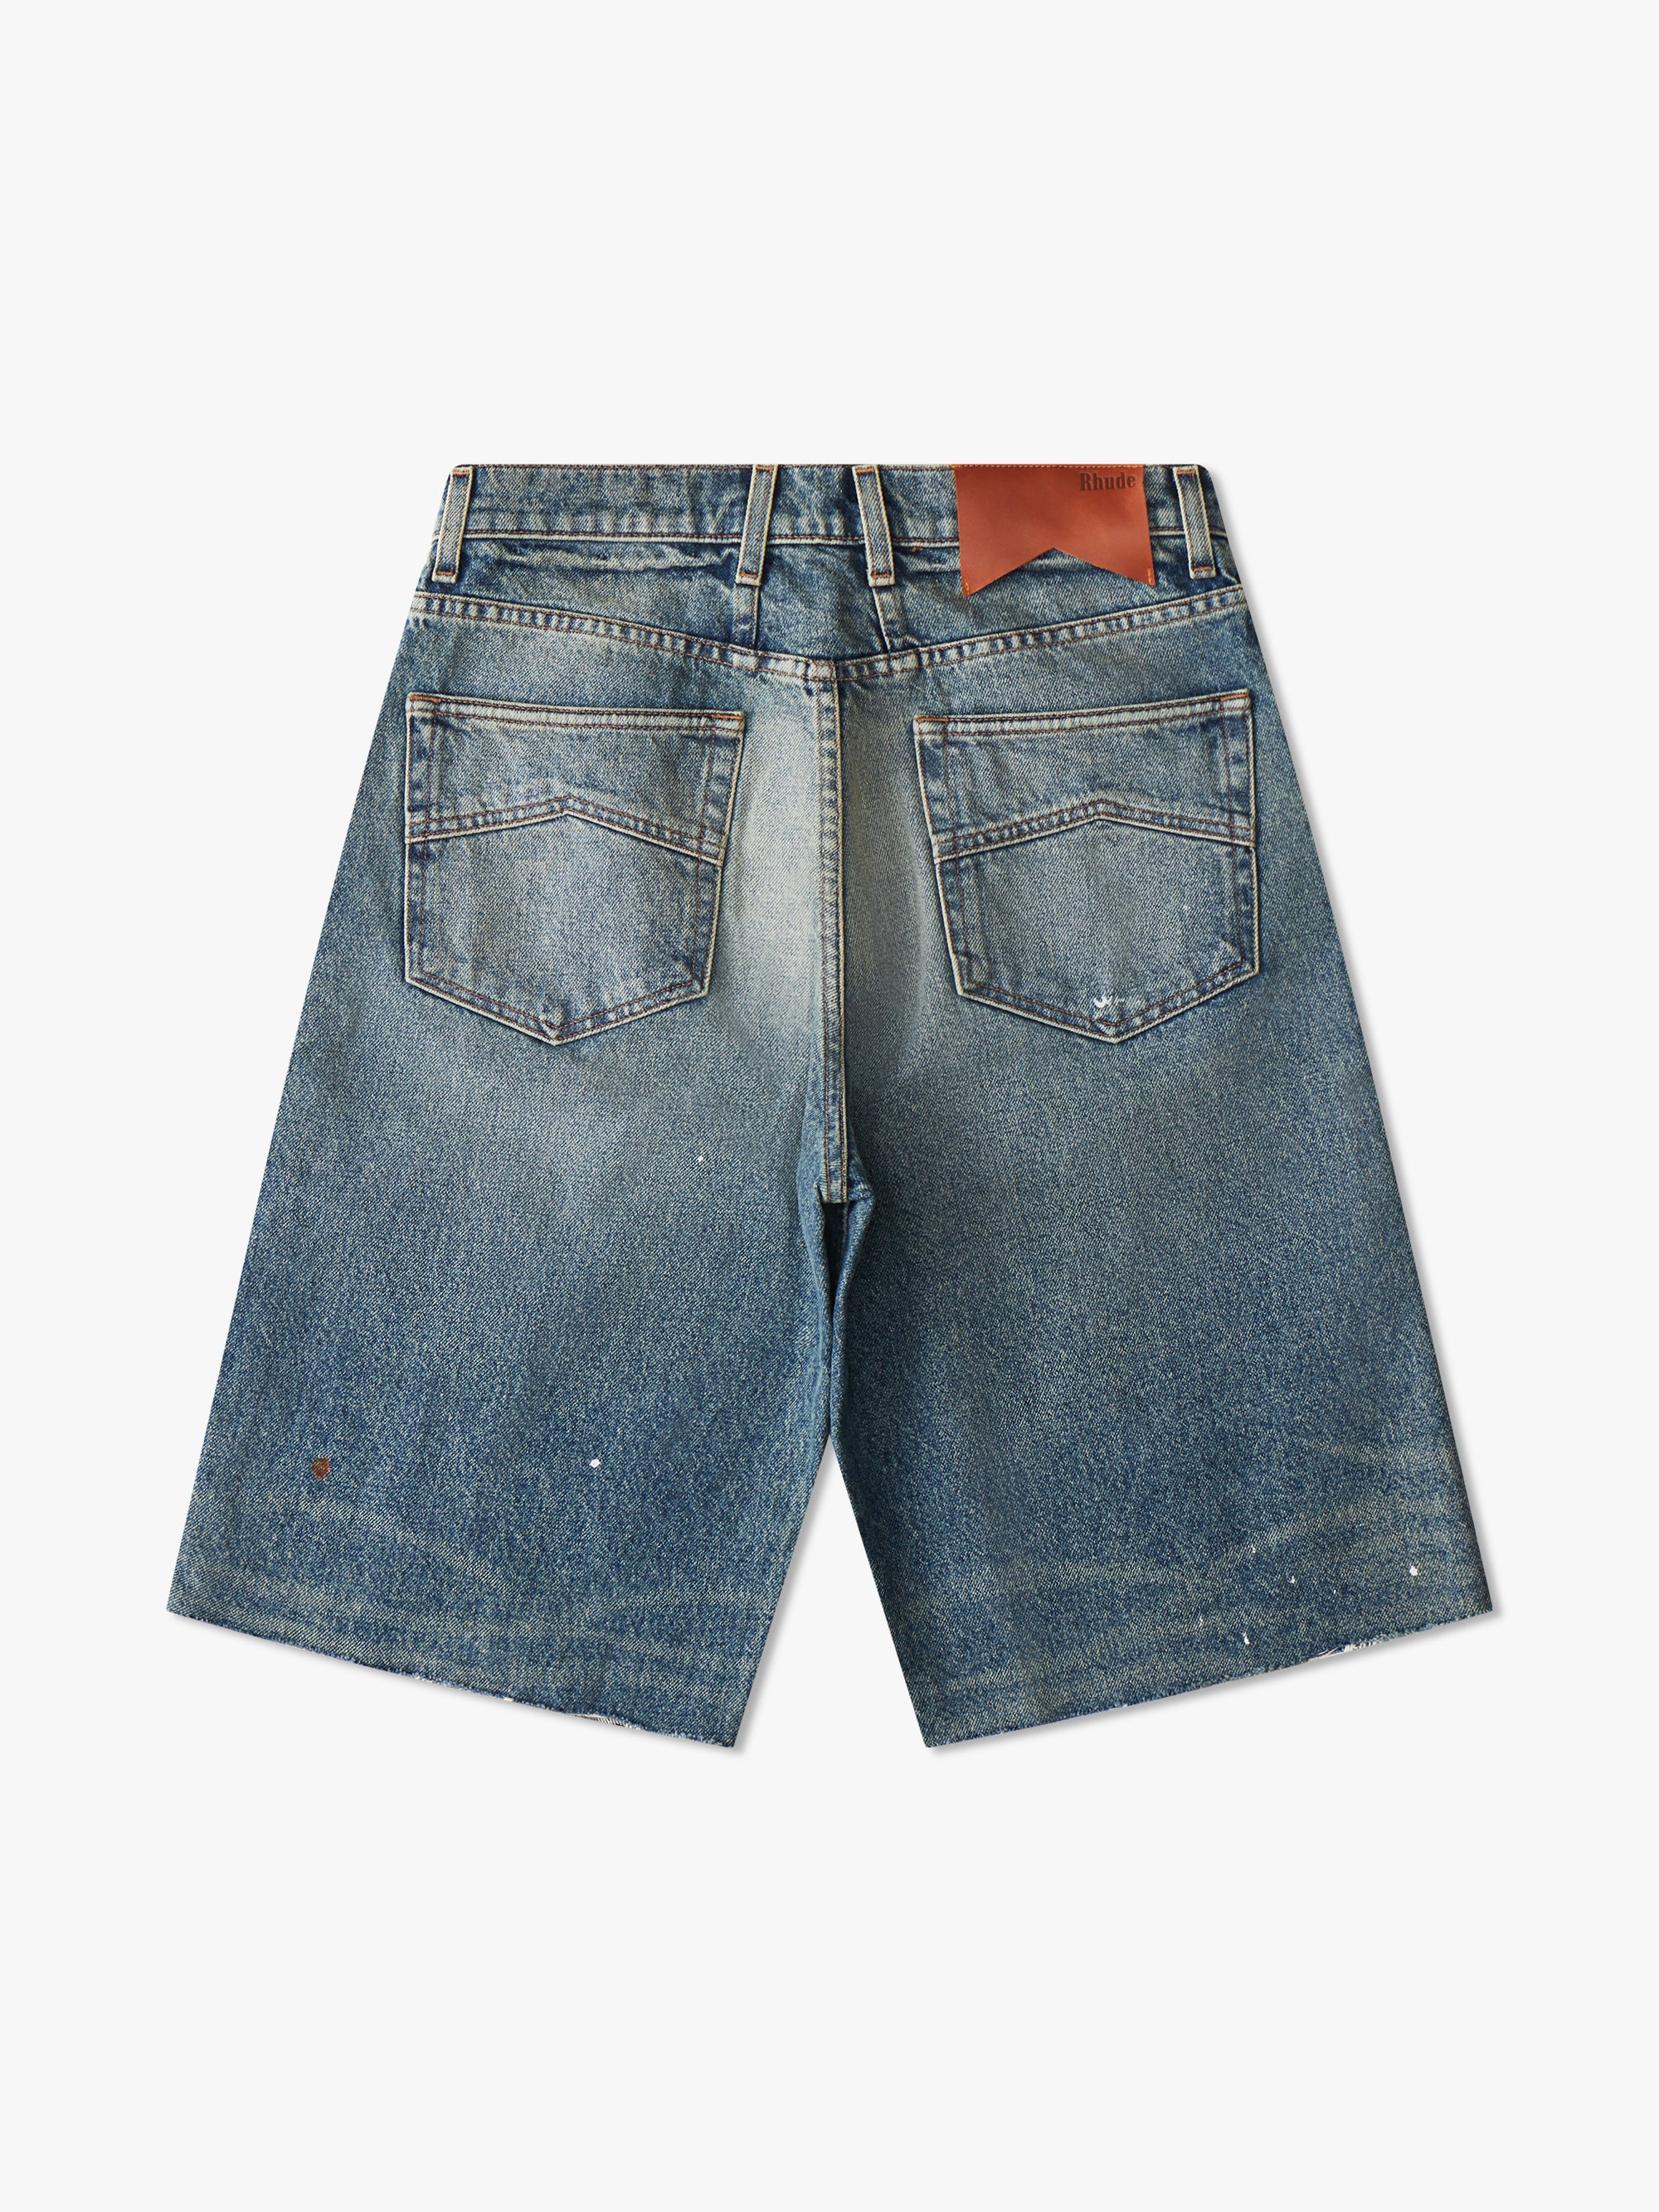 Shorts & Skirts | Rugged Shorts Denim Size-26 | Freeup